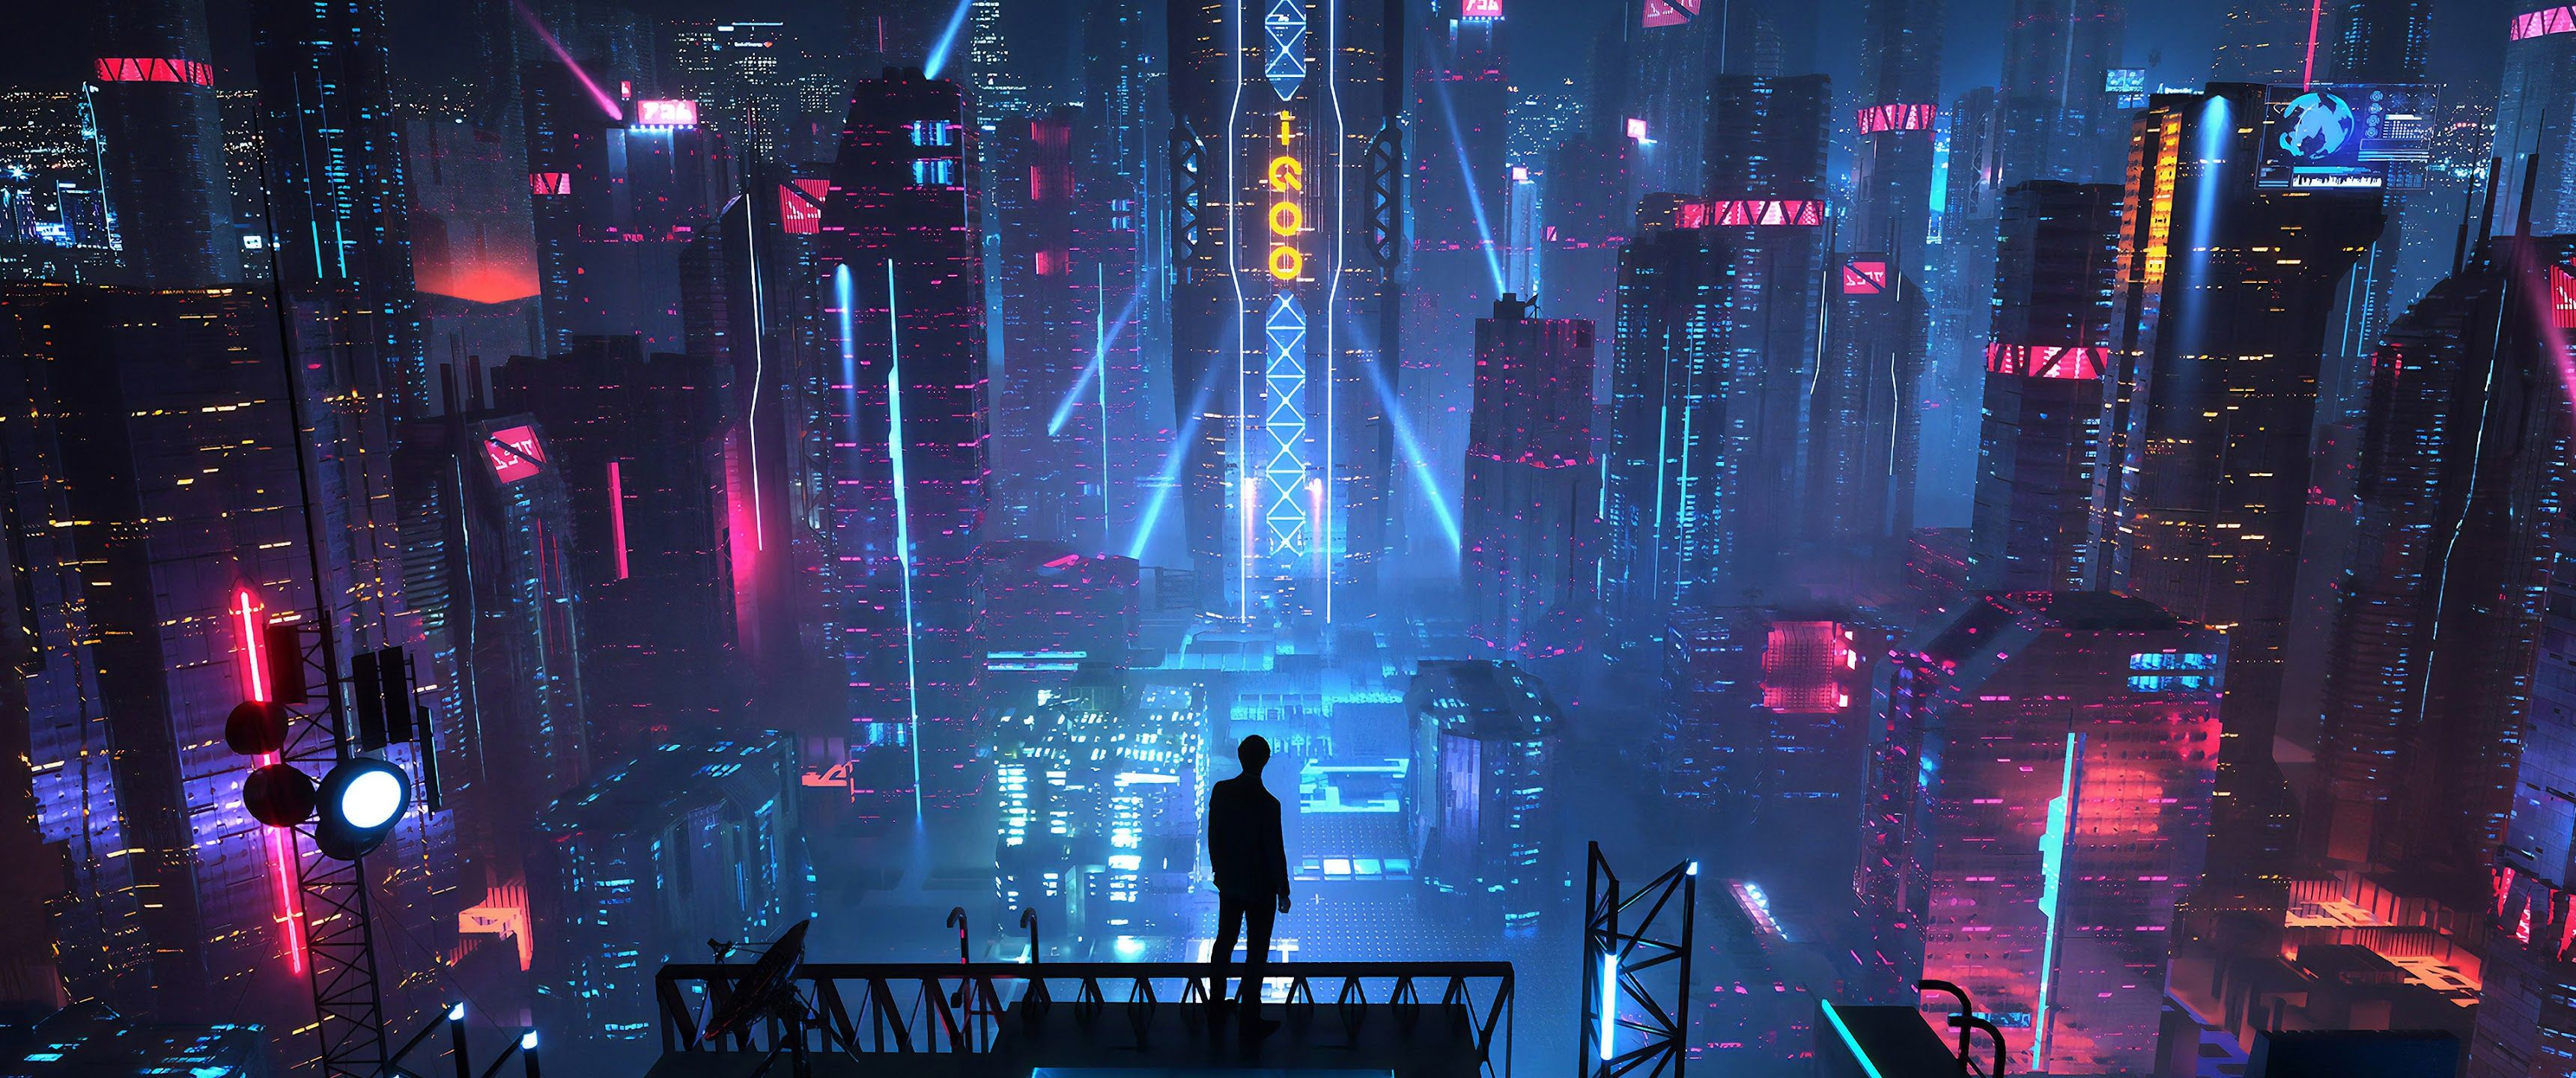 Sci Fi Fi City Buildings Night Cityscape 4K